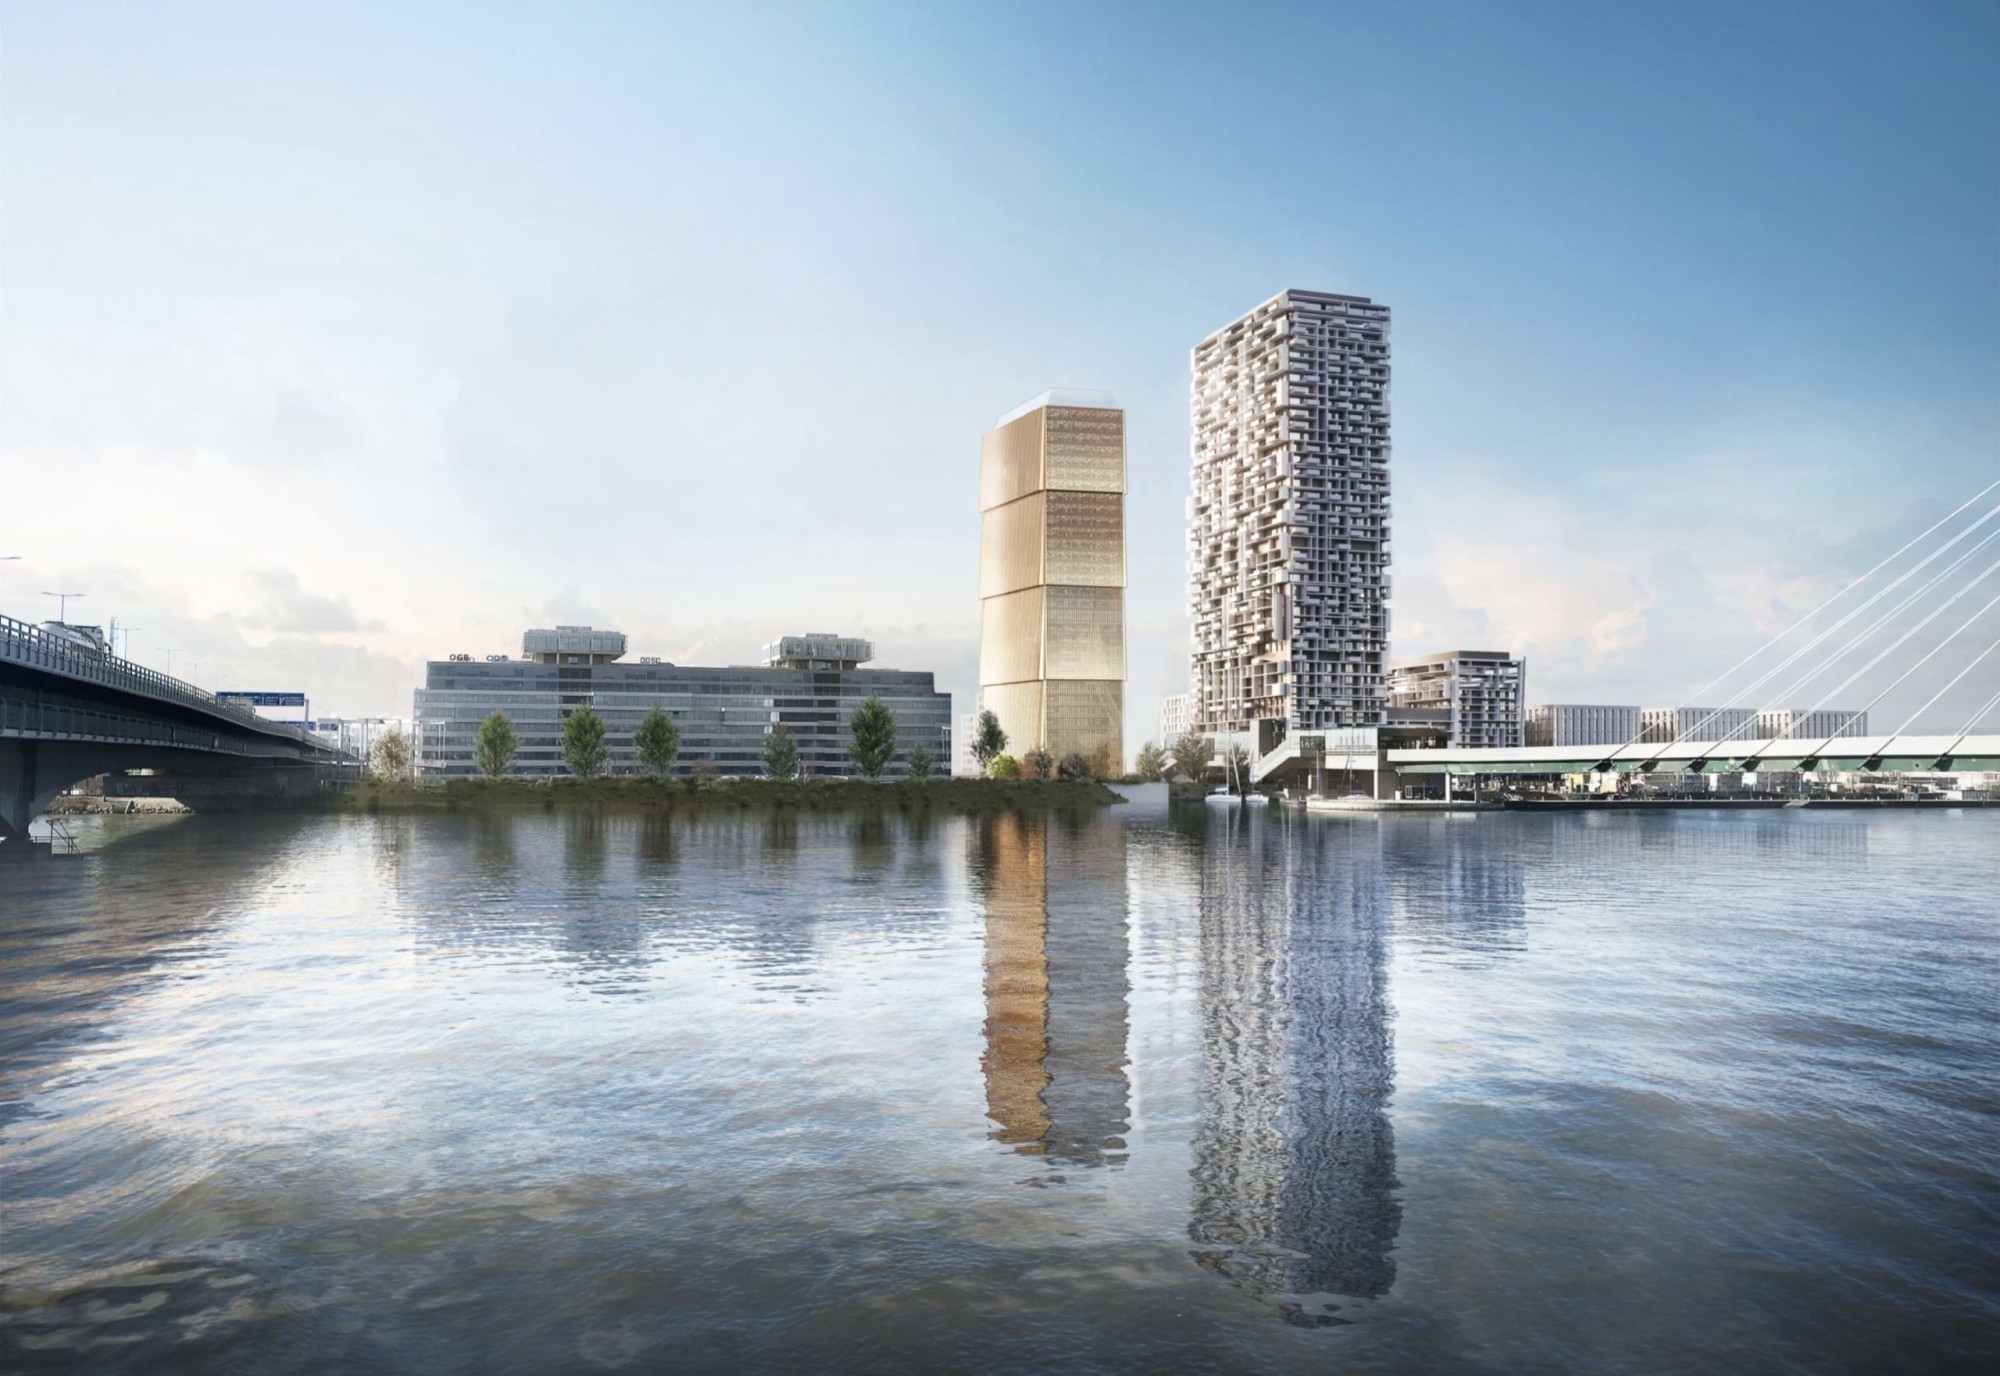 Voici à quoi ressemblera un jour la Donaumarina Tower (à gauche) à Vienne. La tour sera construite juste à côté de la Marina Tower (à droite) achevée en 2022.